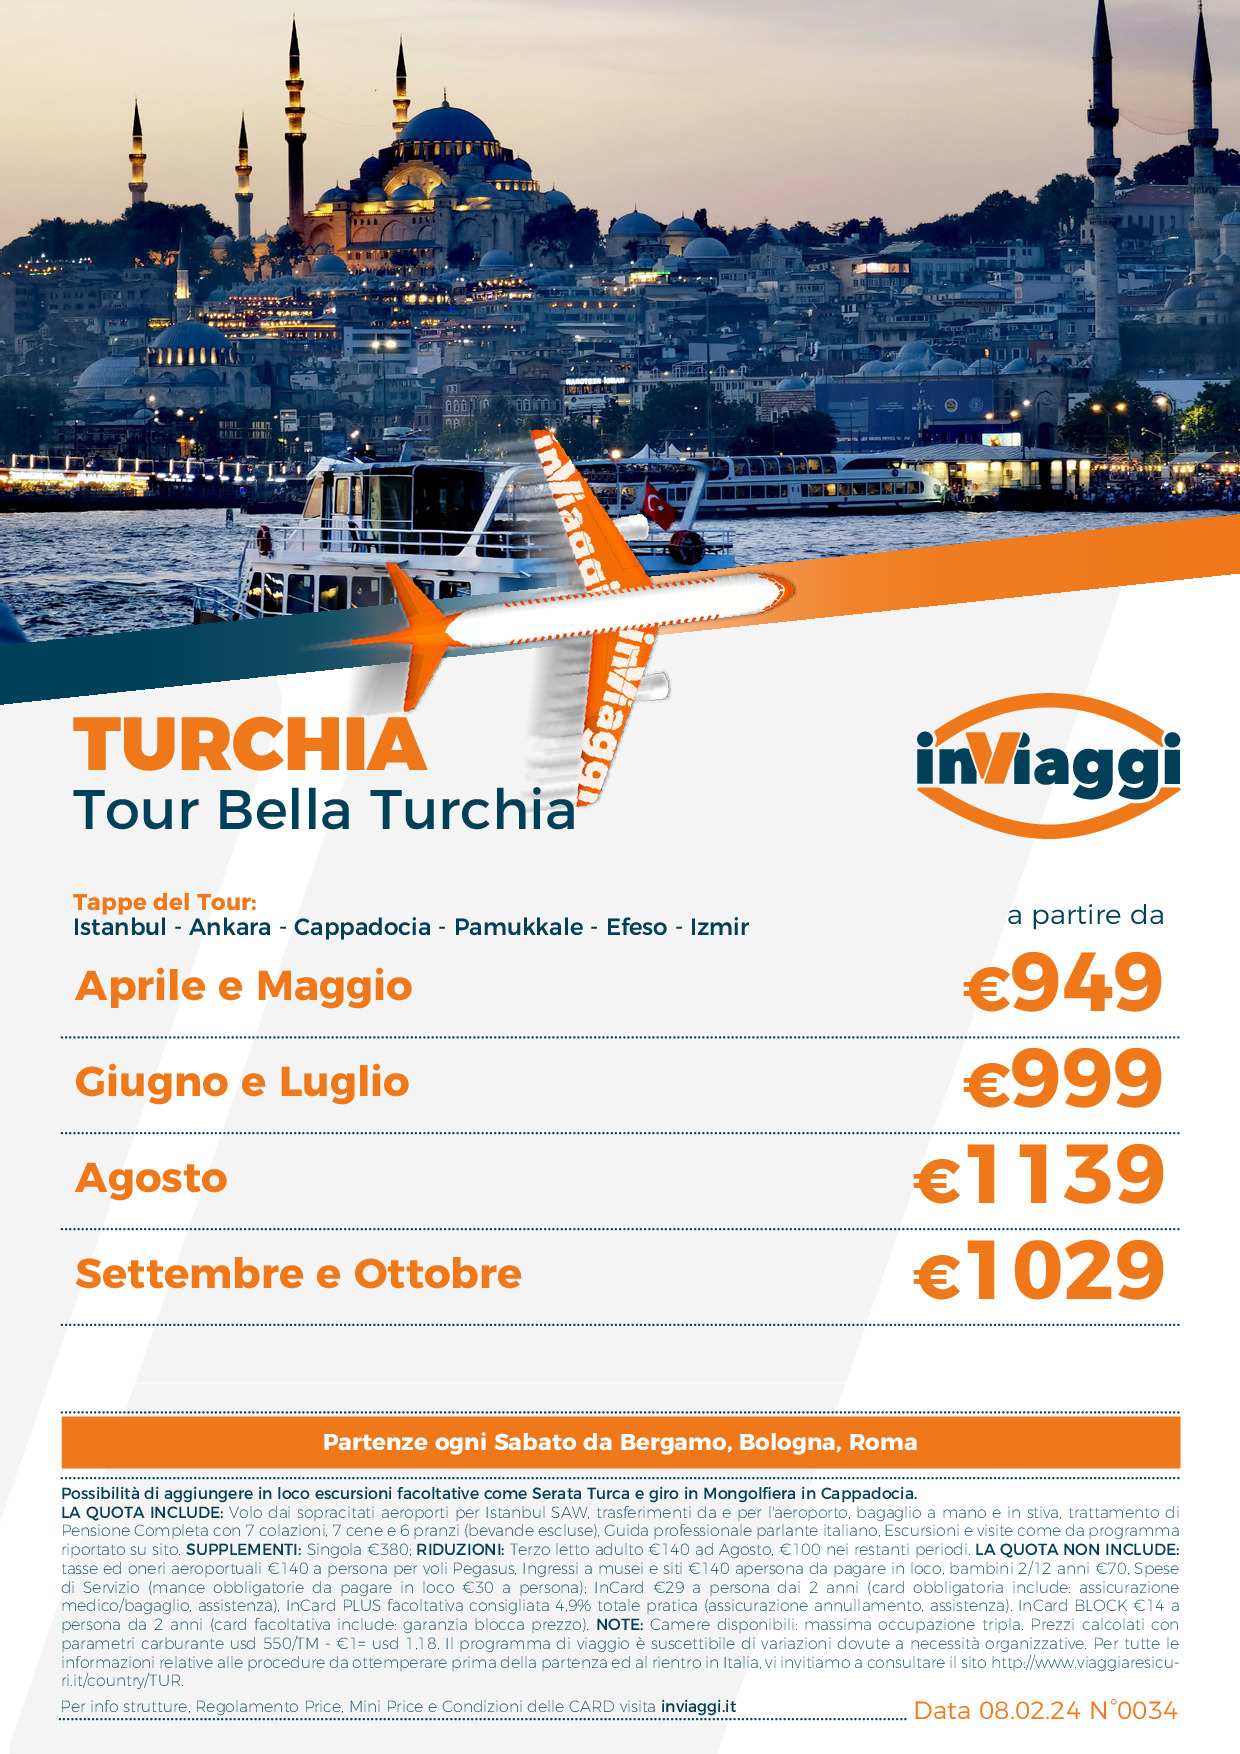 Tour Bella Turchia - Da Bergamo, Bologna e Roma